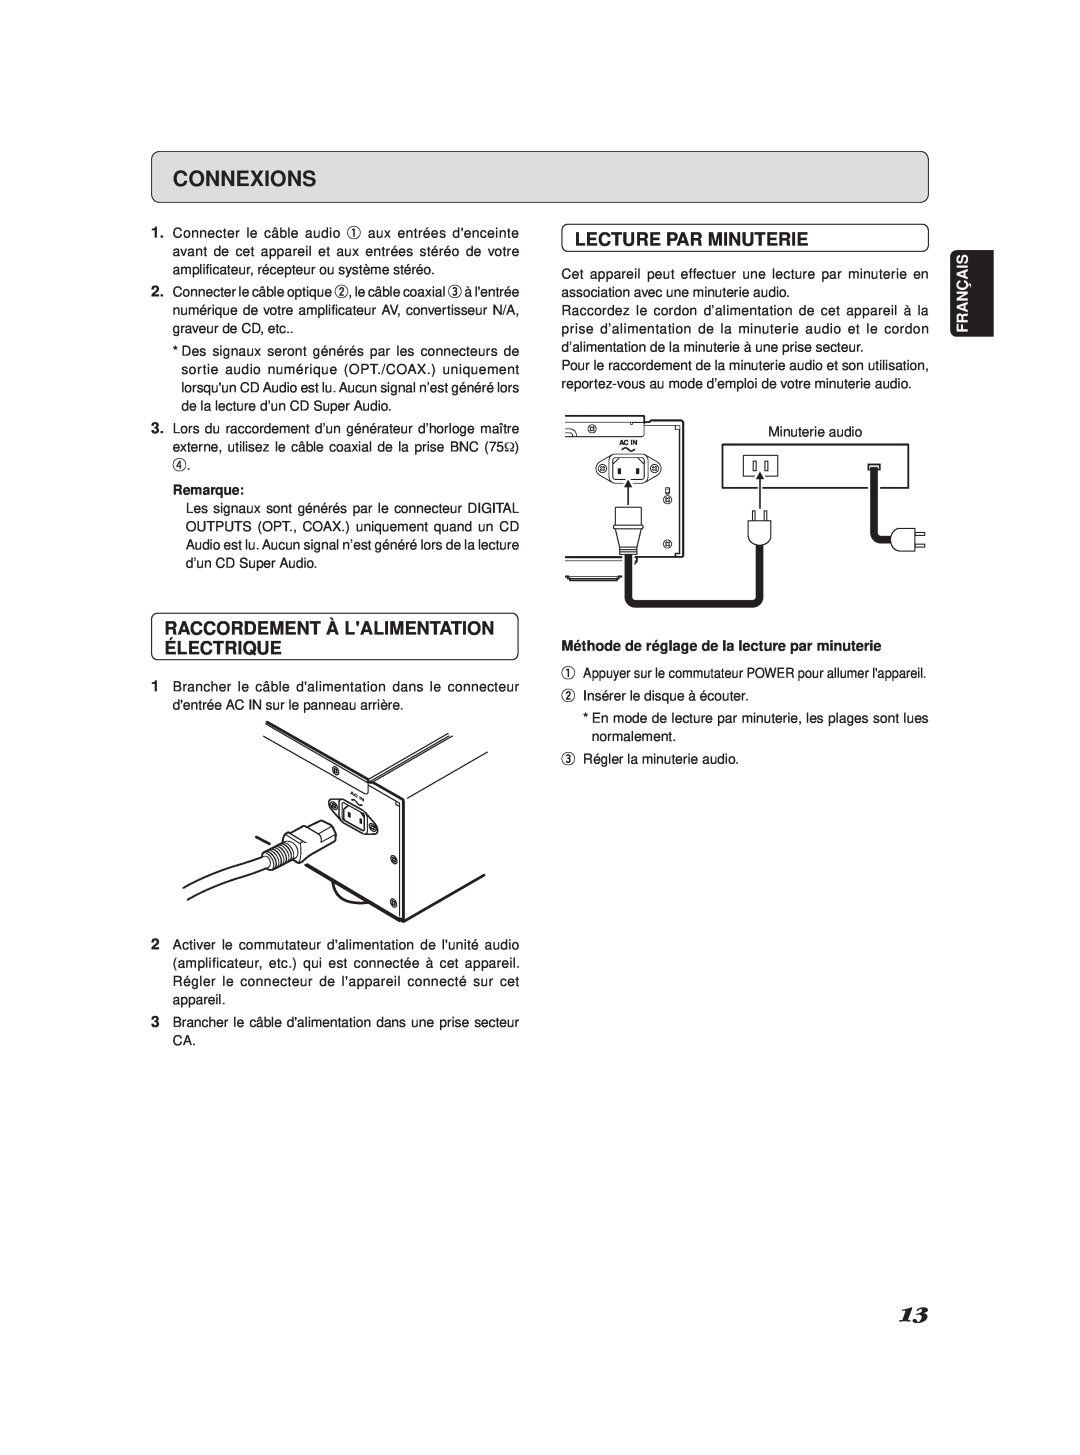 Marantz SA-11S2 manual Connexions, Lecture Par Minuterie, Raccordement À Lalimentation Électrique, Français 